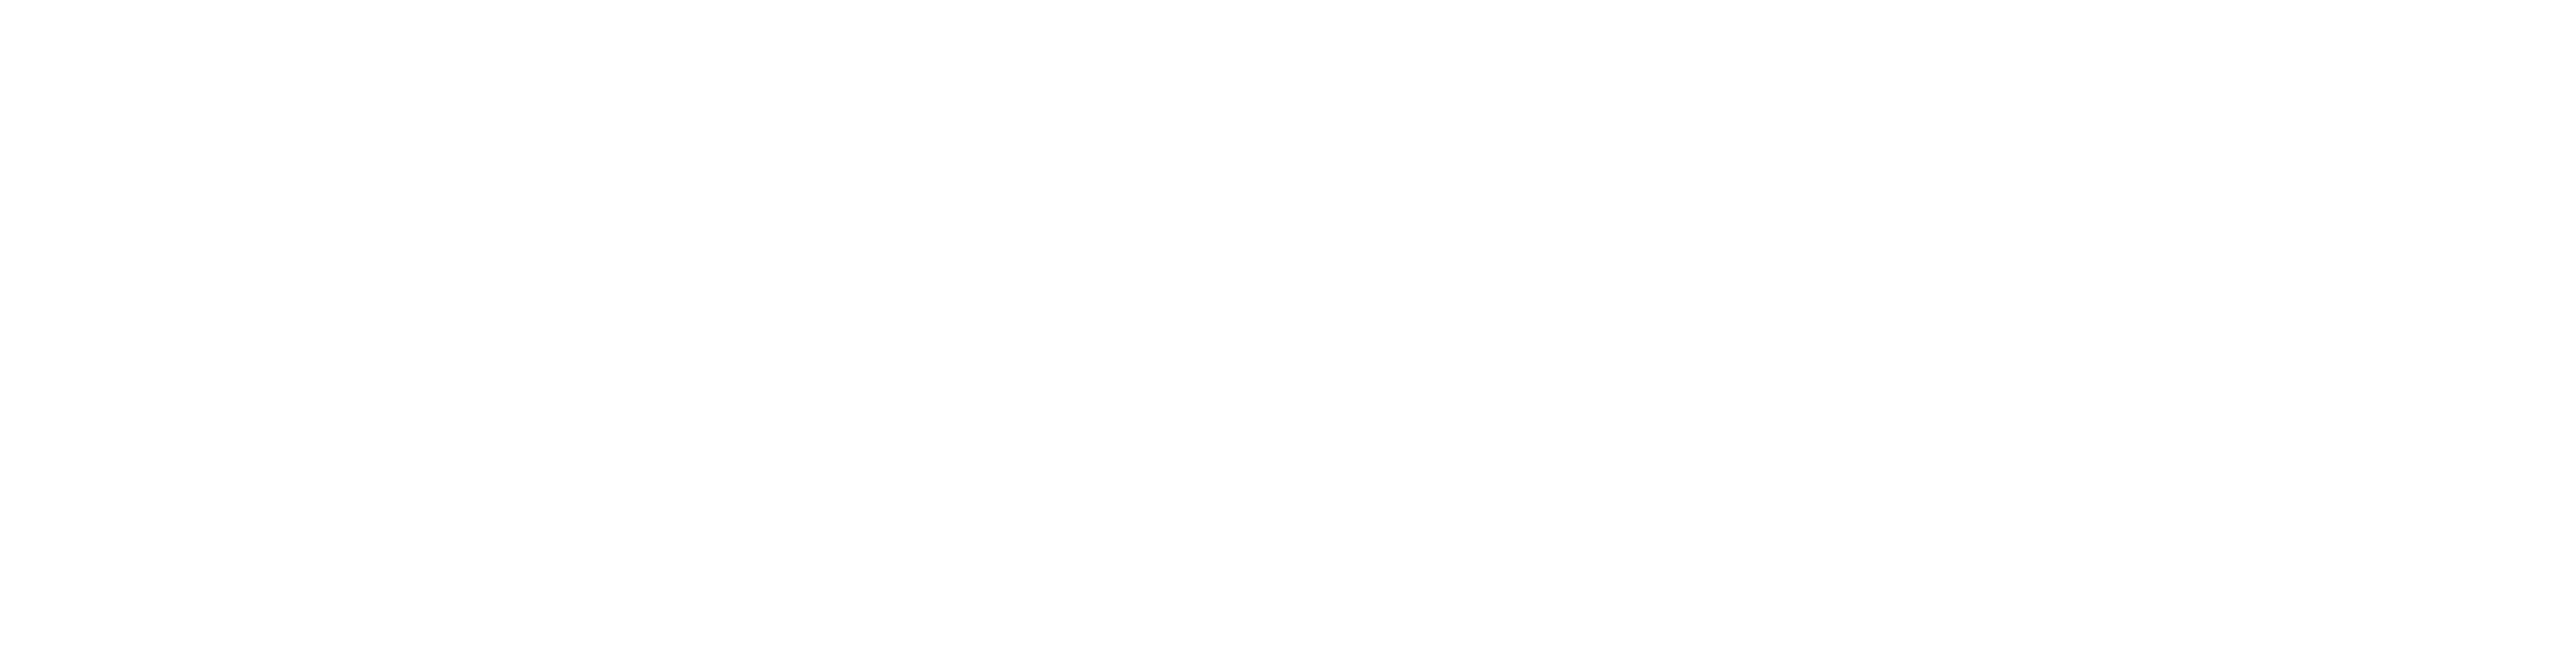 2024.1.5(FRI)-1.6(SAT)